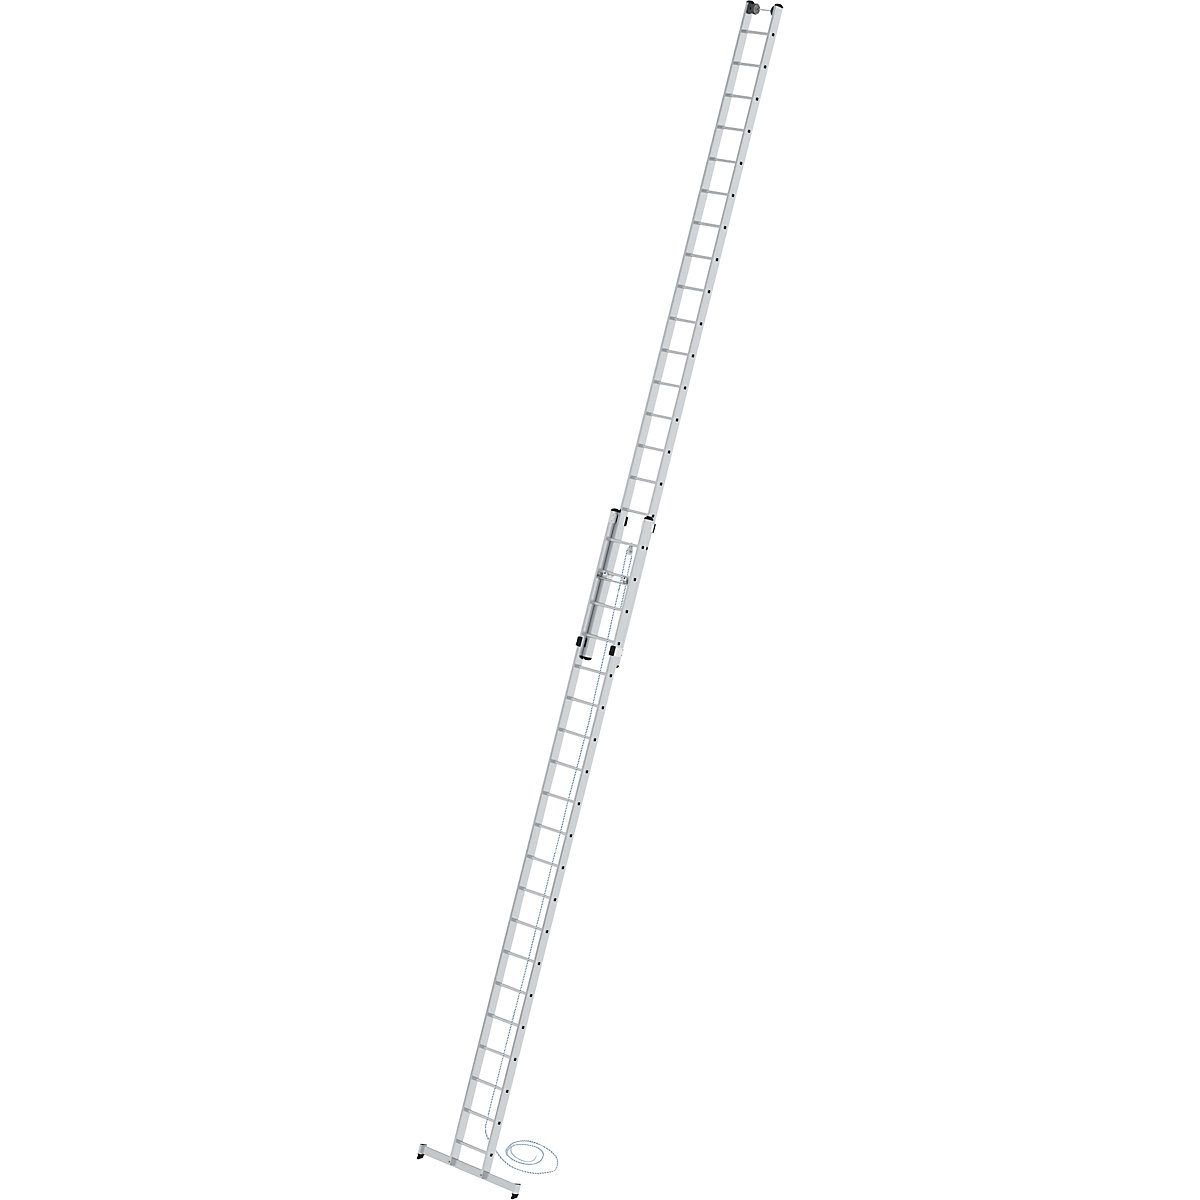 Escalera de mano de altura regulable – MUNK, escalera con cable, de 2 tramos con traviesa nivello®, 2 x 20 peldaños-6